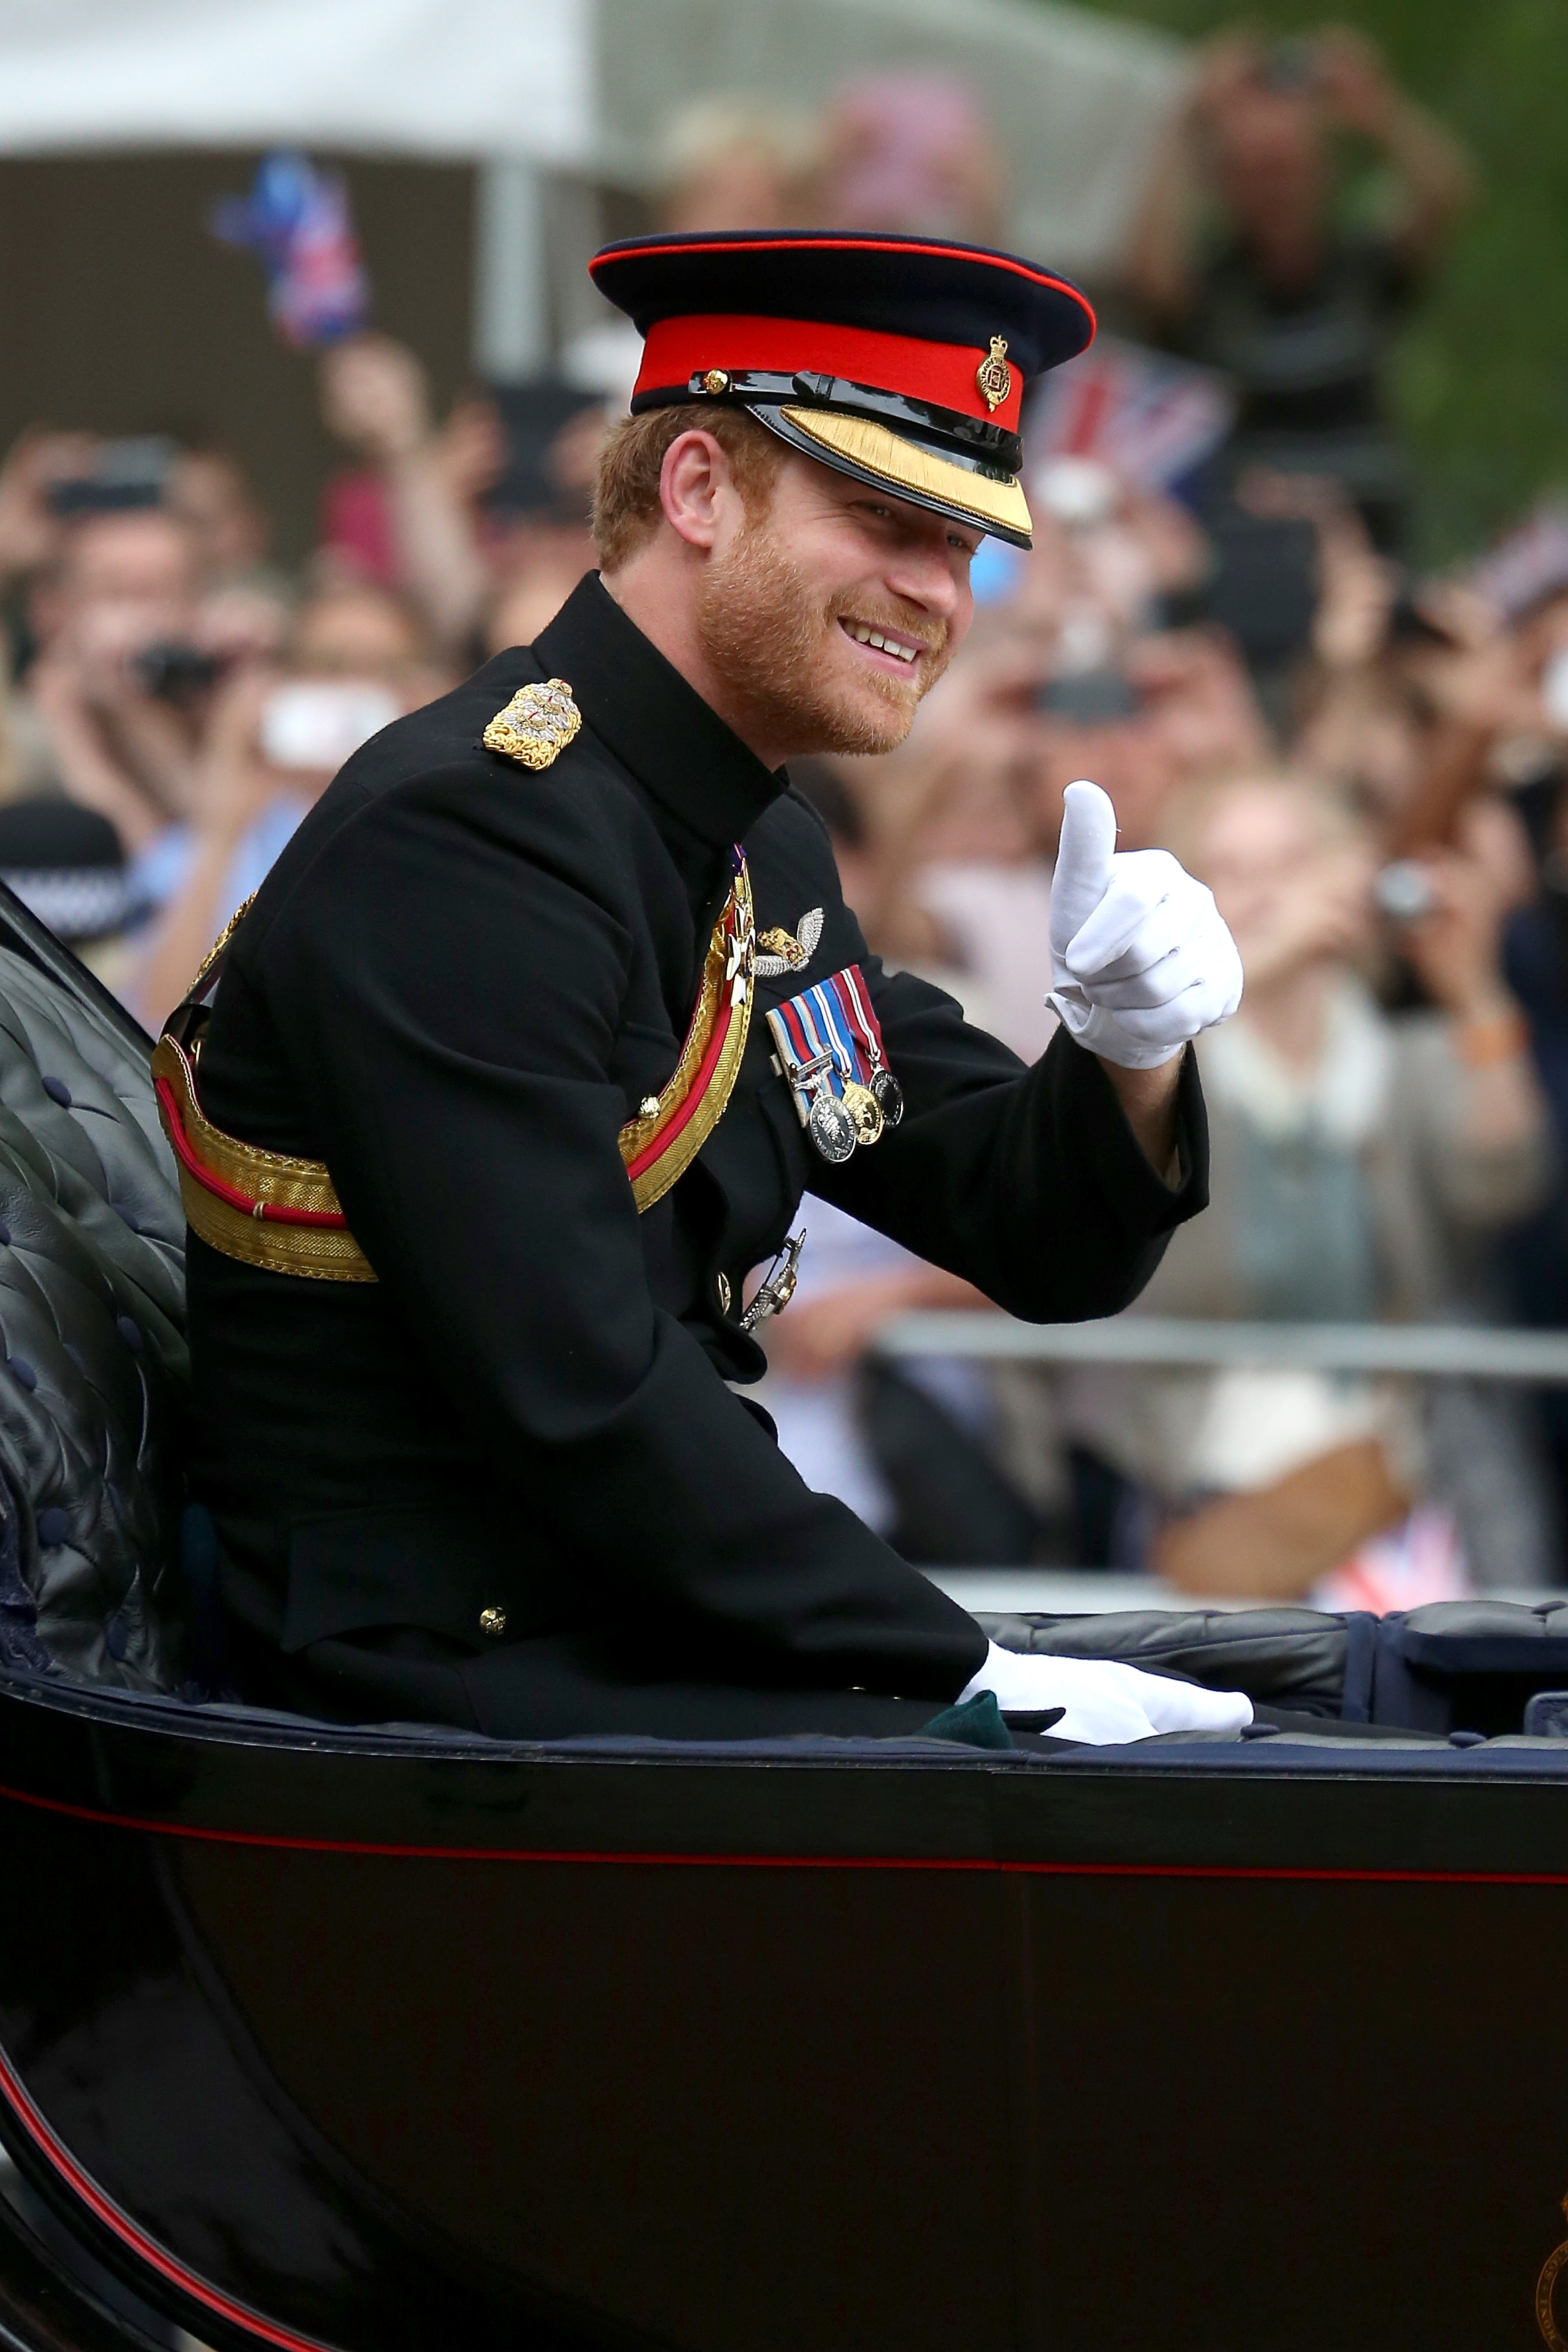 El duque, fotografiado aquí en el evento en 2016, tiene vínculos personales debido a sus antecedentes militares.